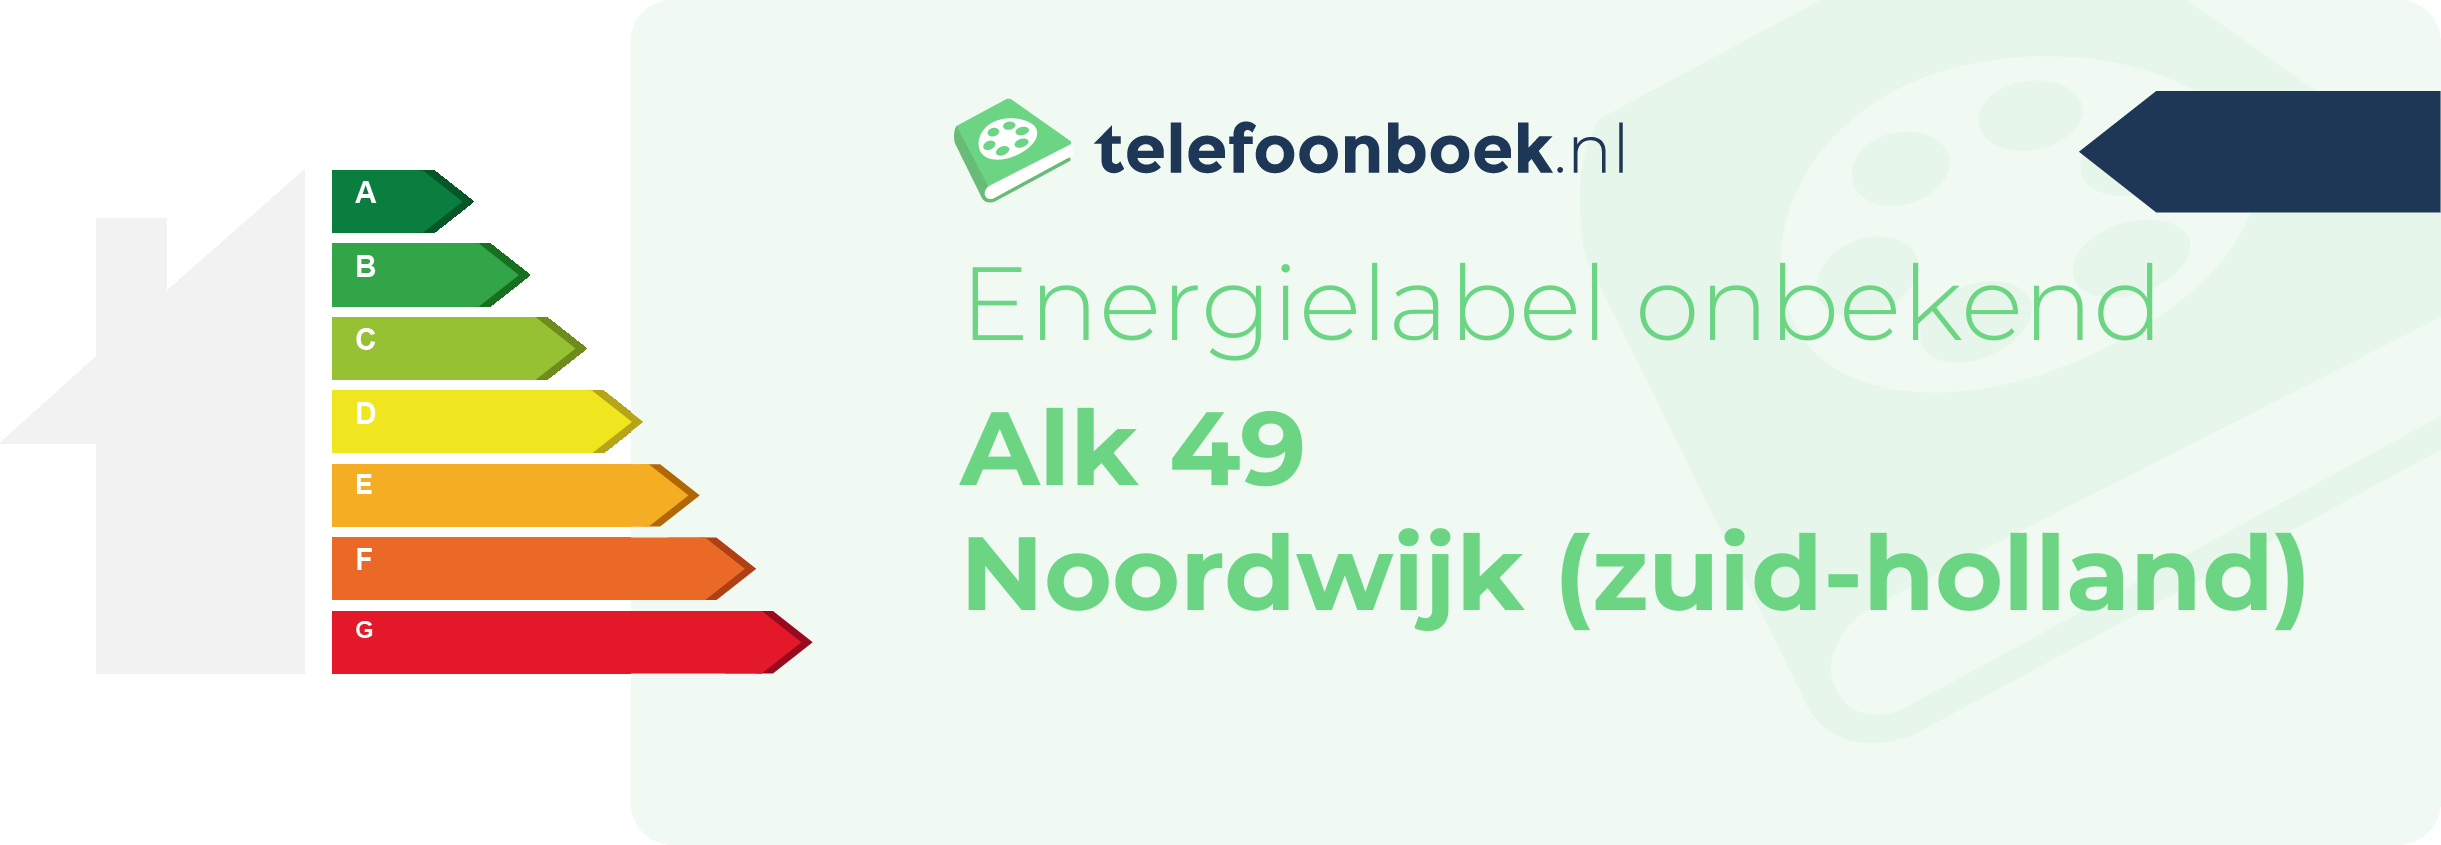 Energielabel Alk 49 Noordwijk (Zuid-Holland)